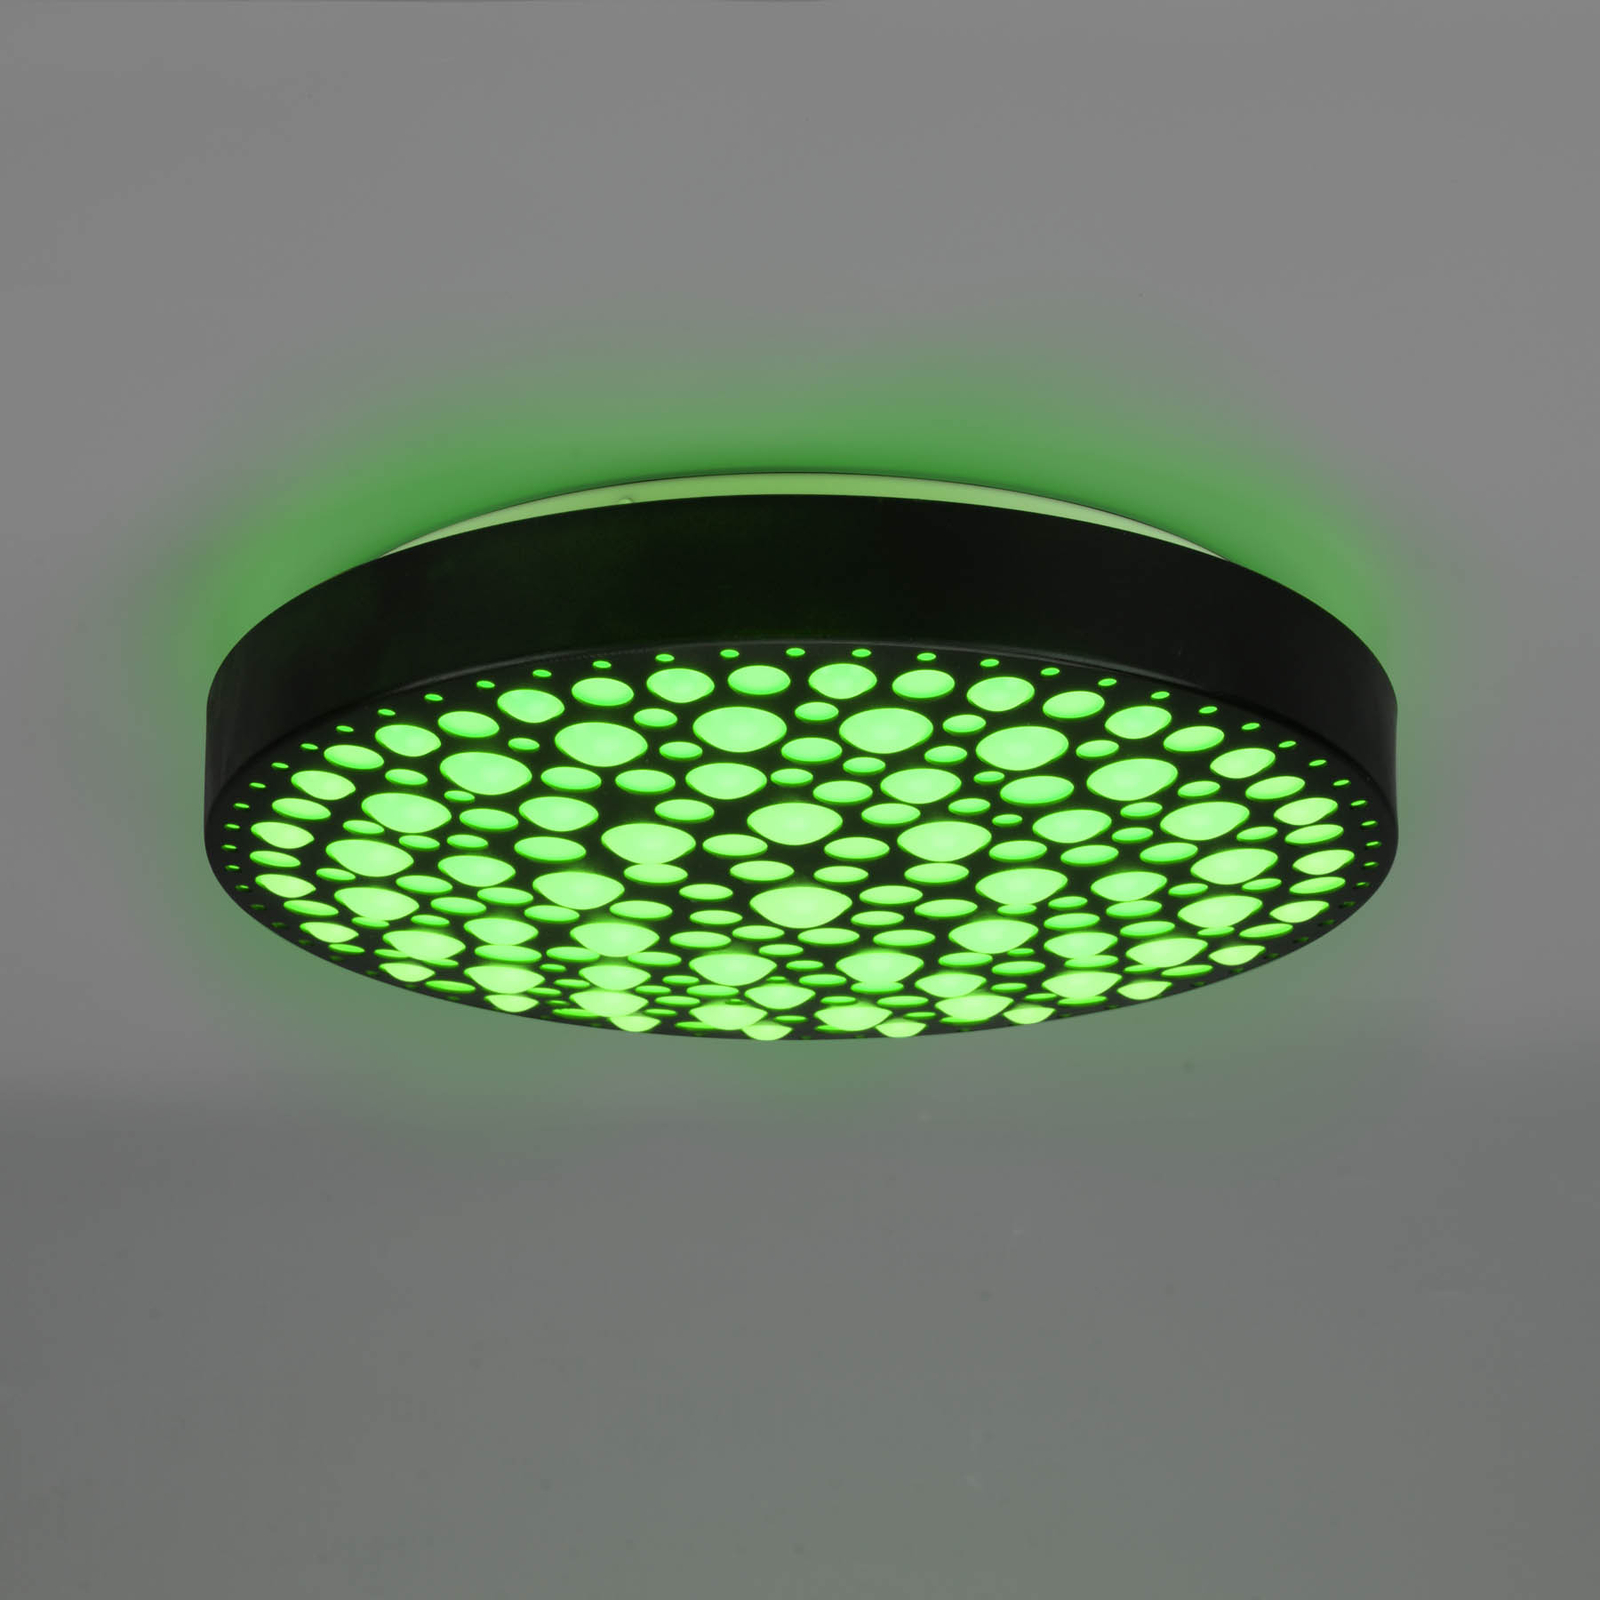 LED lubinis šviestuvas "Chizu" Ø 40,5 cm, reguliuojamas RGB, juodas